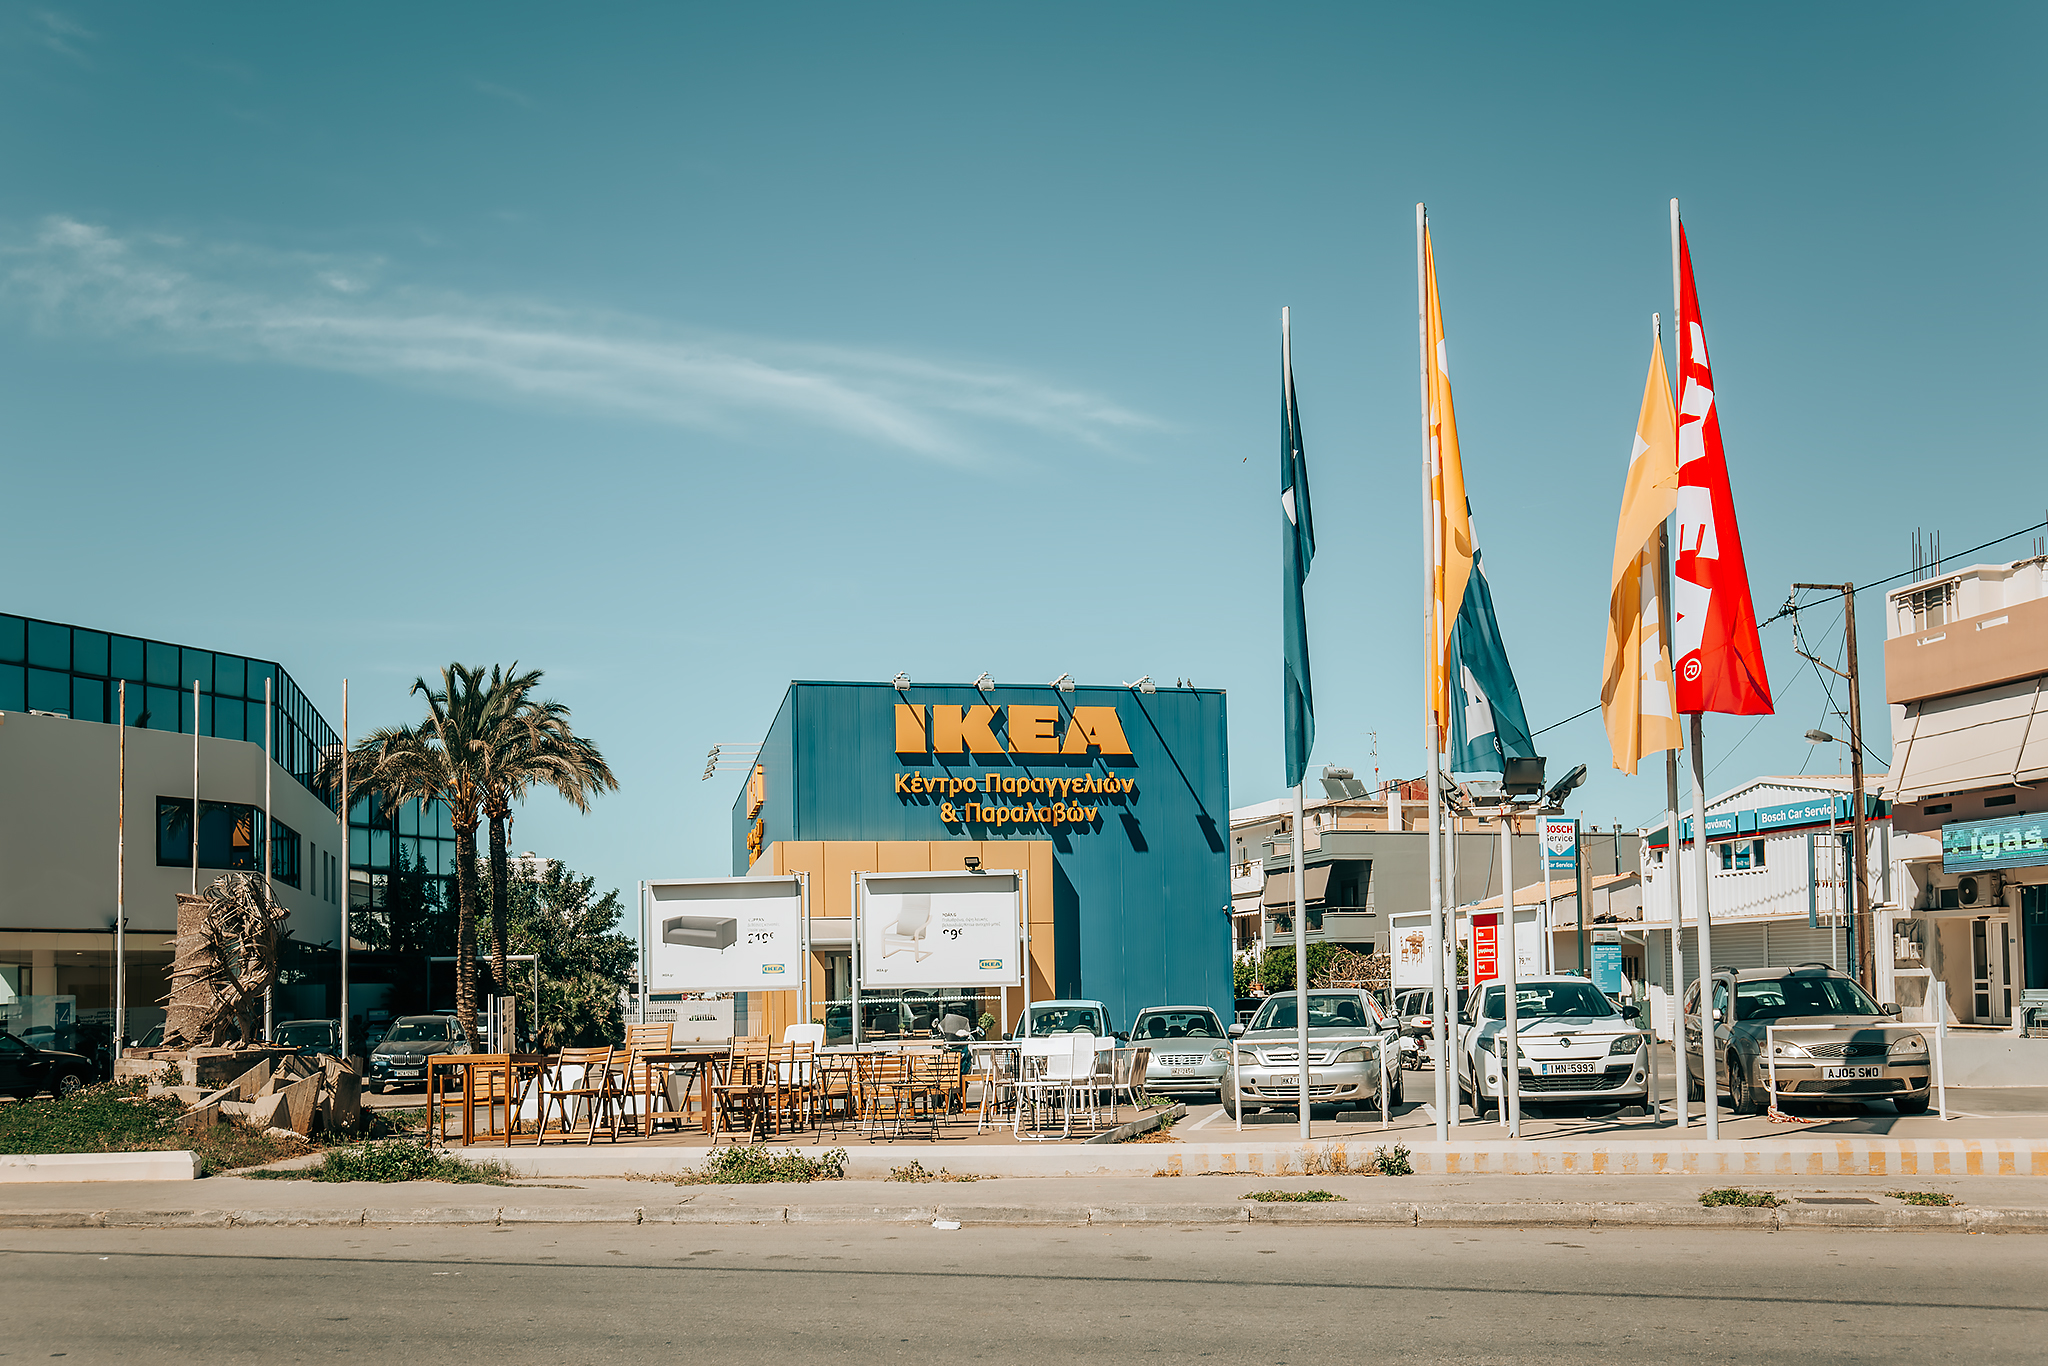 IKEA i Heraklion på Kreta